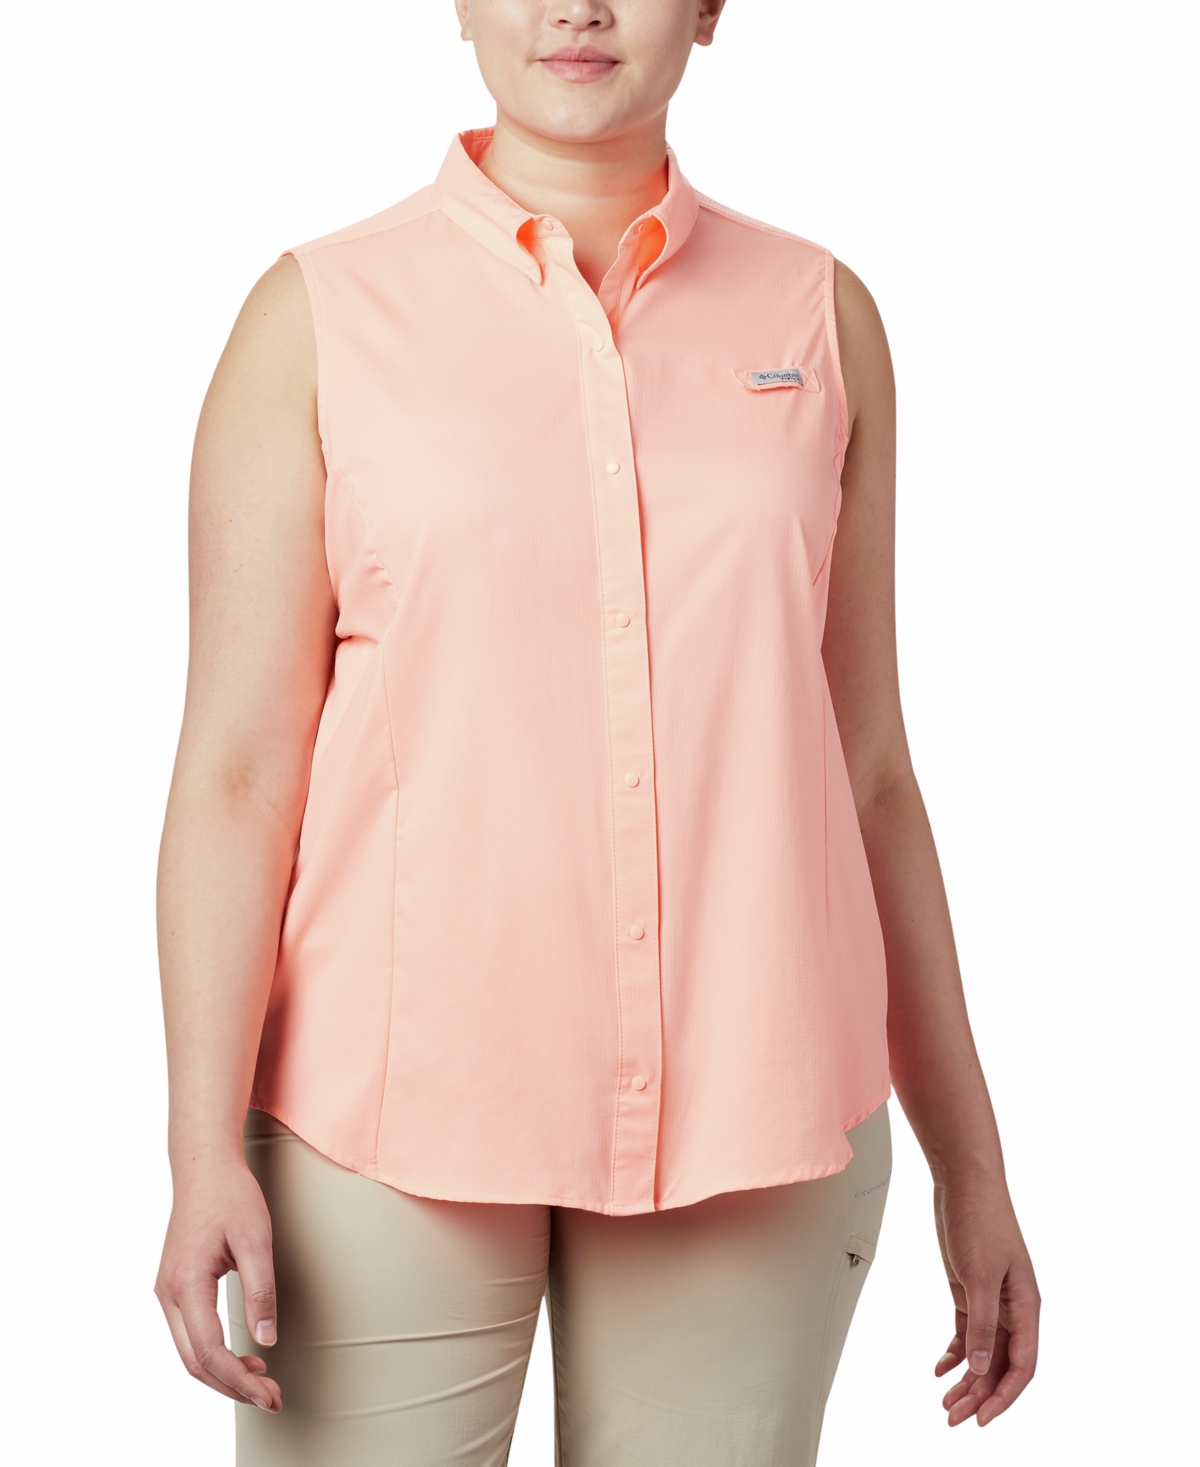 Plus Size Pfg Tamiami Button-Front Sleeveless Top - Tiki Pink